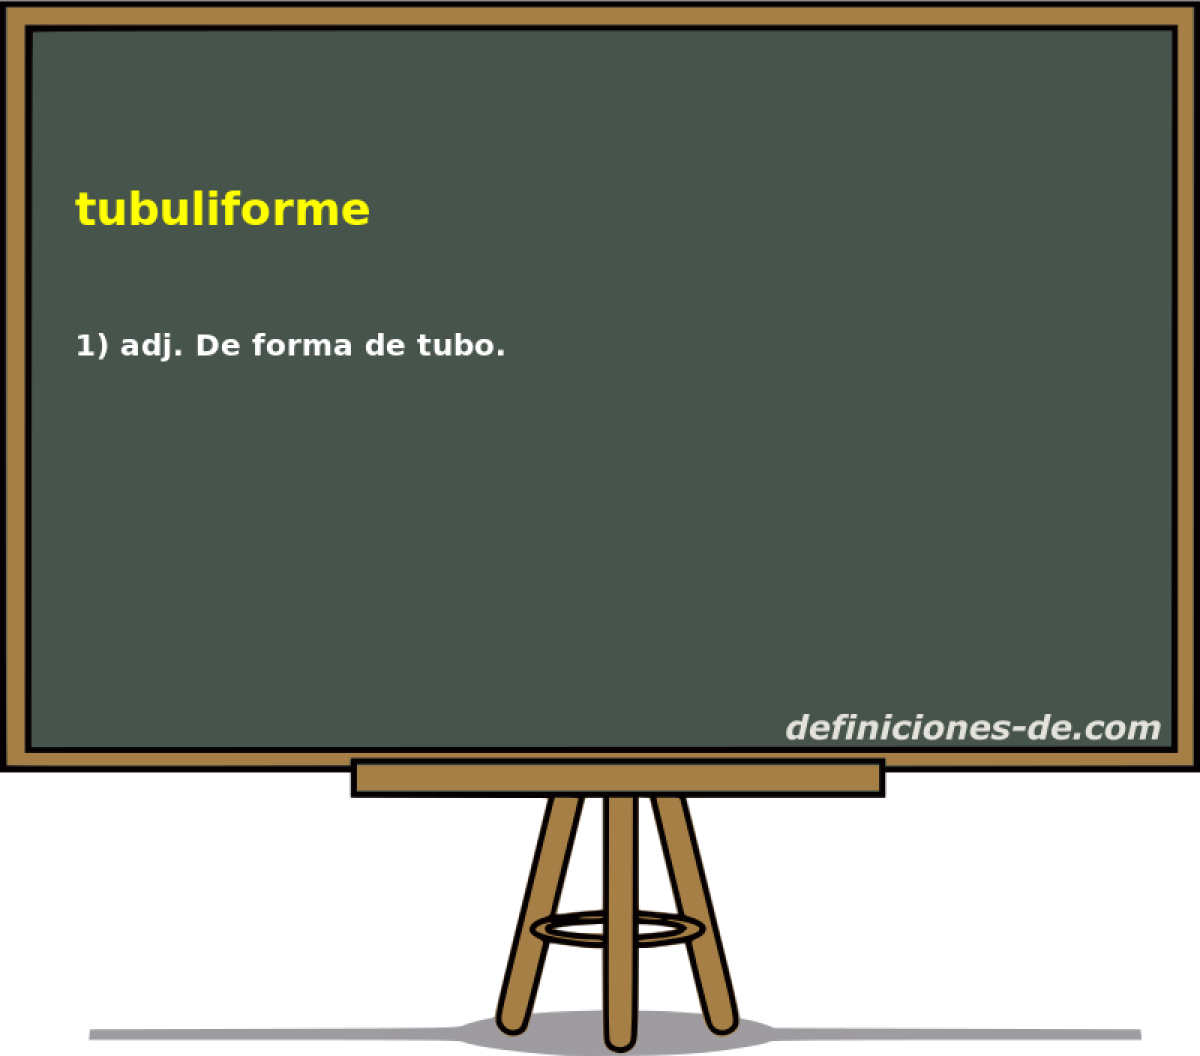 tubuliforme 